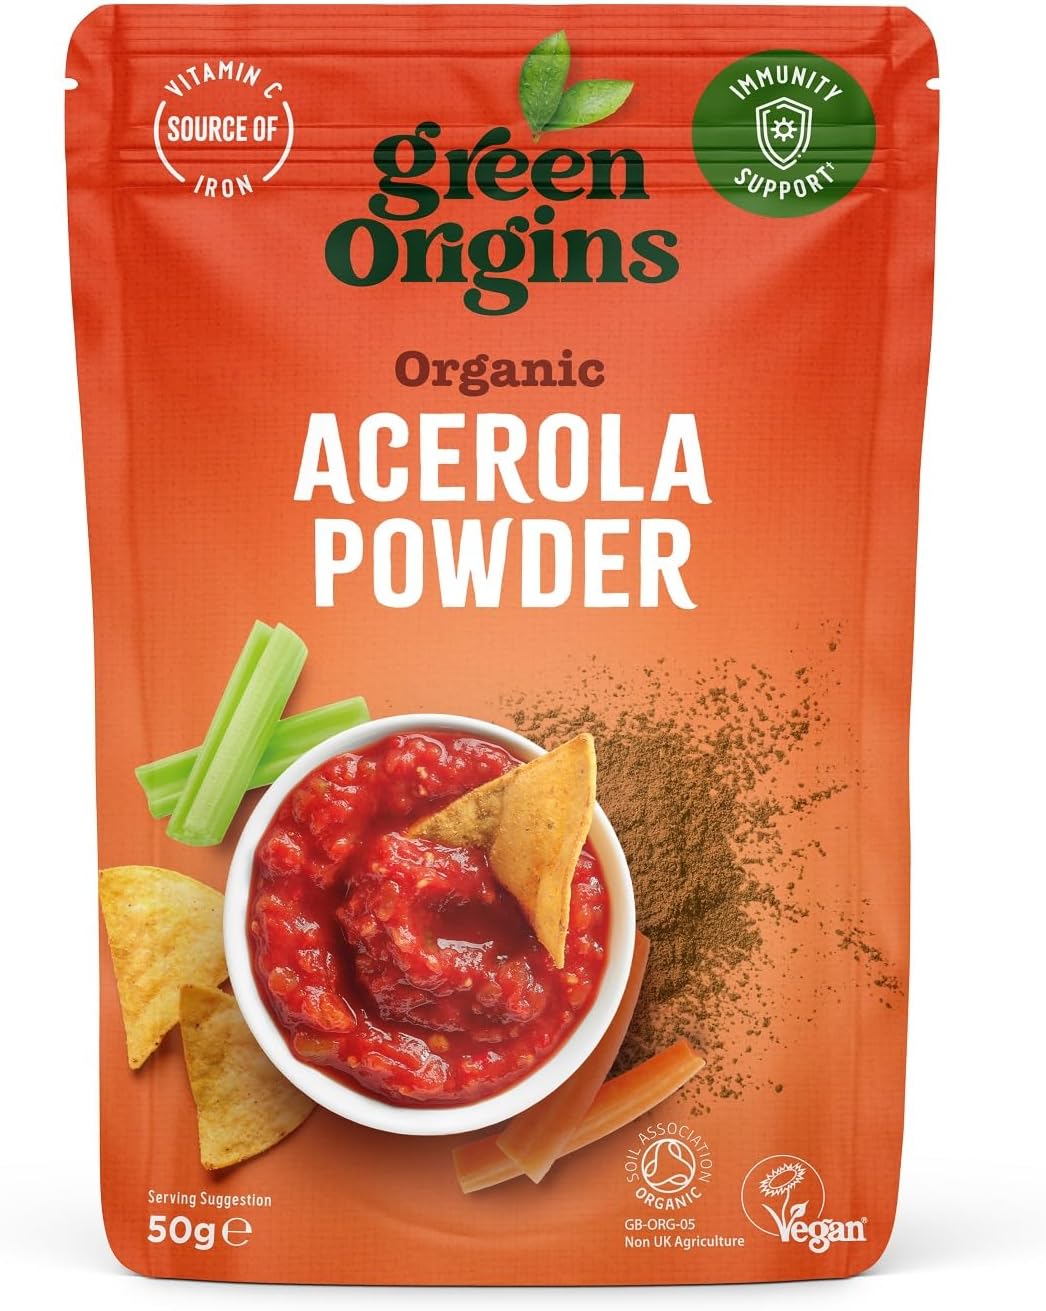 Green Origins Organic Acerola Powder, Raw 50g

50 Grams